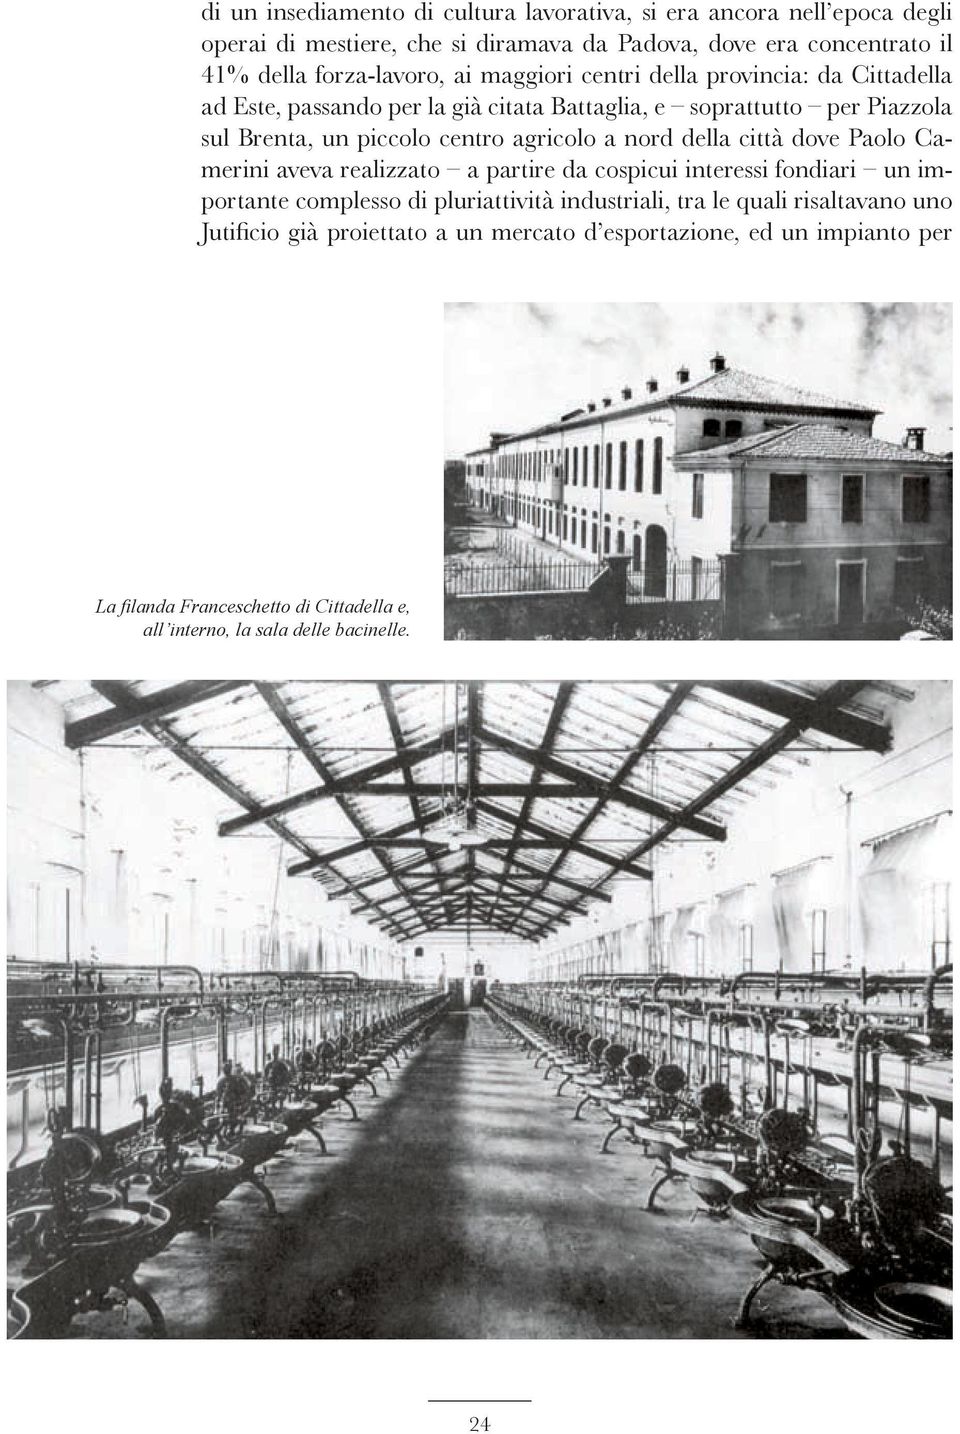 centro agricolo a nord della città dove Paolo Camerini aveva realizzato a partire da cospicui interessi fondiari un importante complesso di pluriattività industriali,